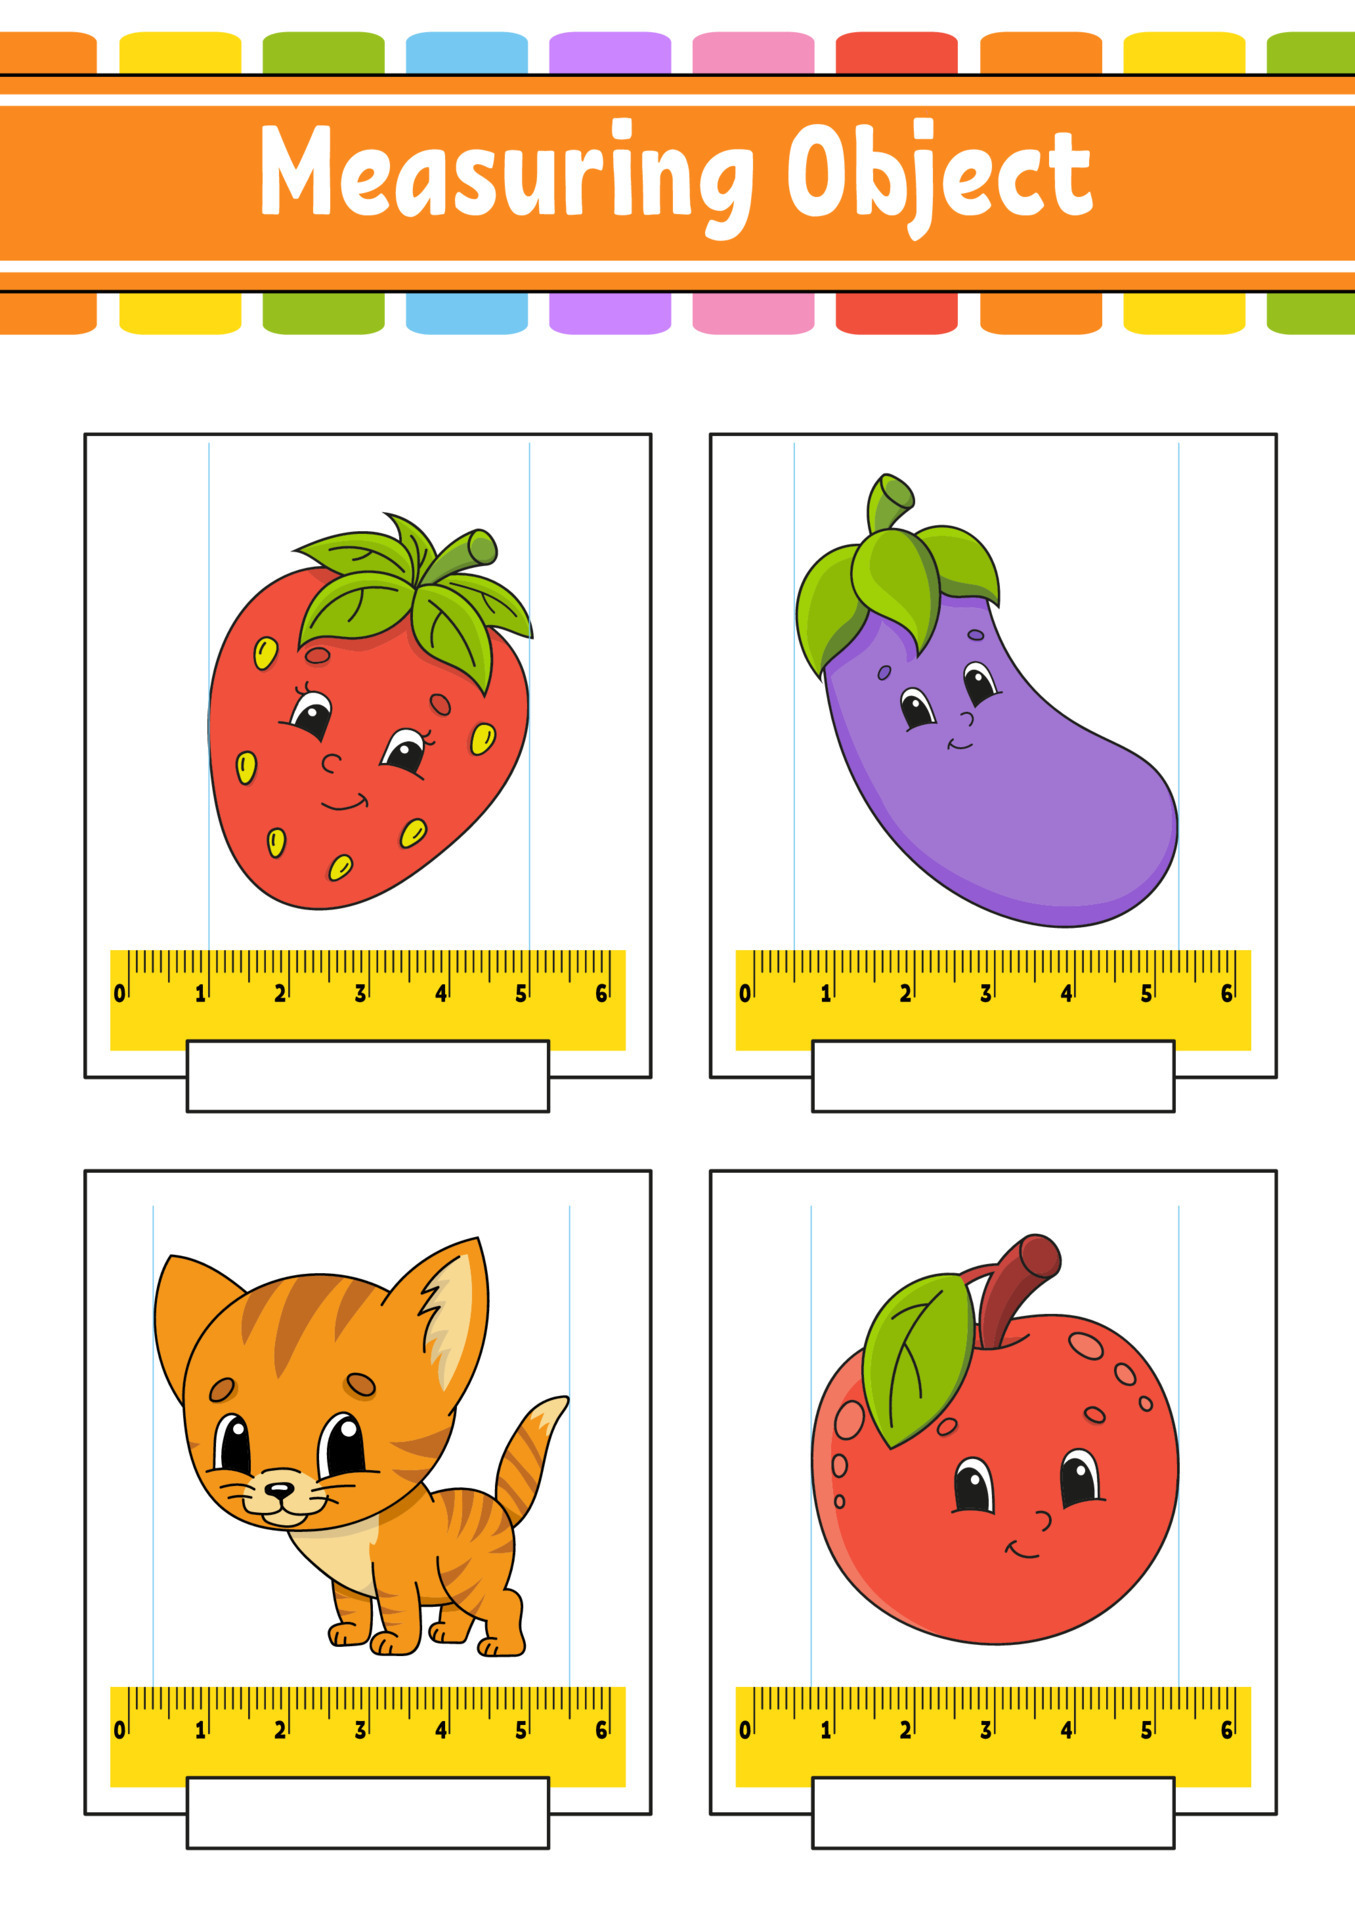 Medição de comprimento em centímetros e milímetros planilha de  desenvolvimento educacional jogo para crianças página de atividade colorida